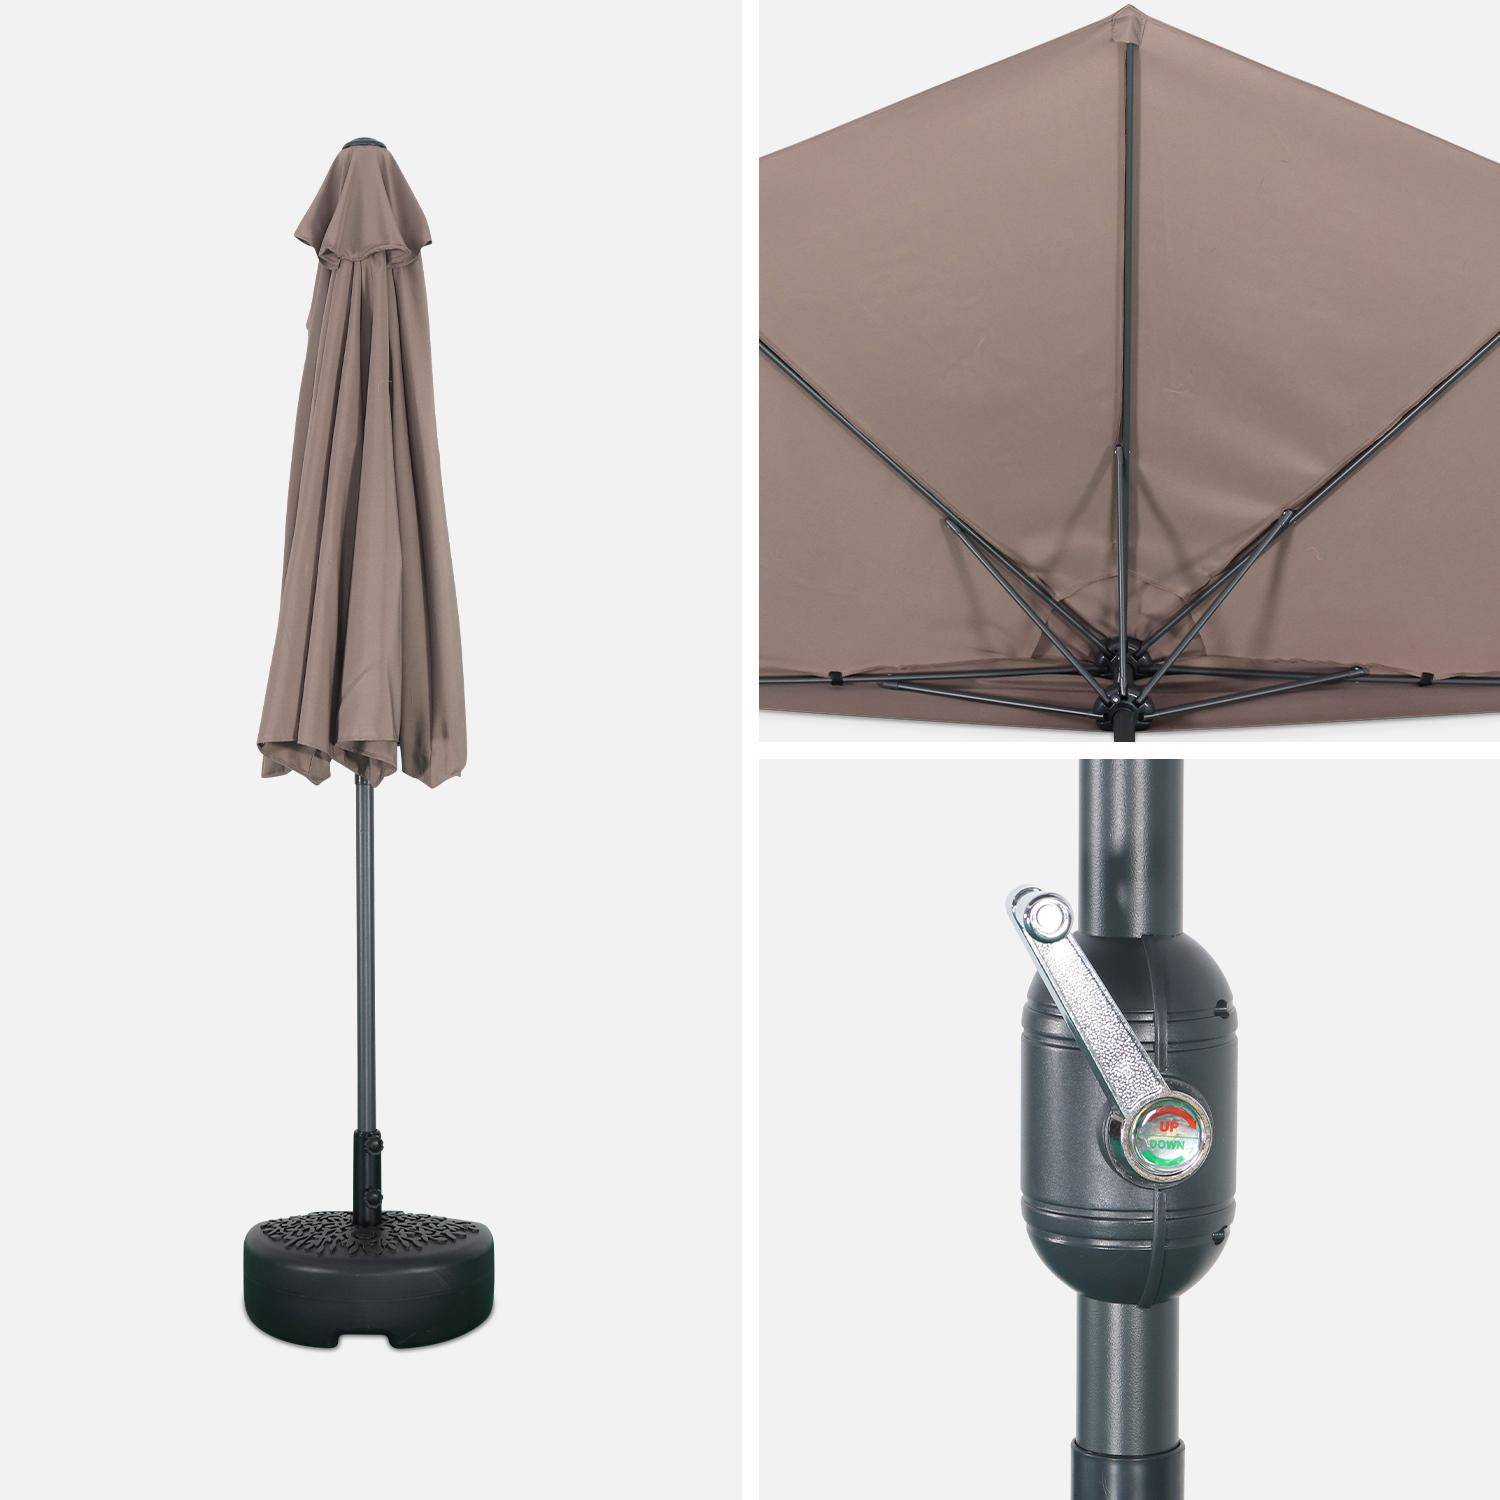 Ombrellone da balcone Ø250cm - CALVI - Mezzo ombrellone dritto, palo in alluminio con manovella, telo bruno/talpa Photo4